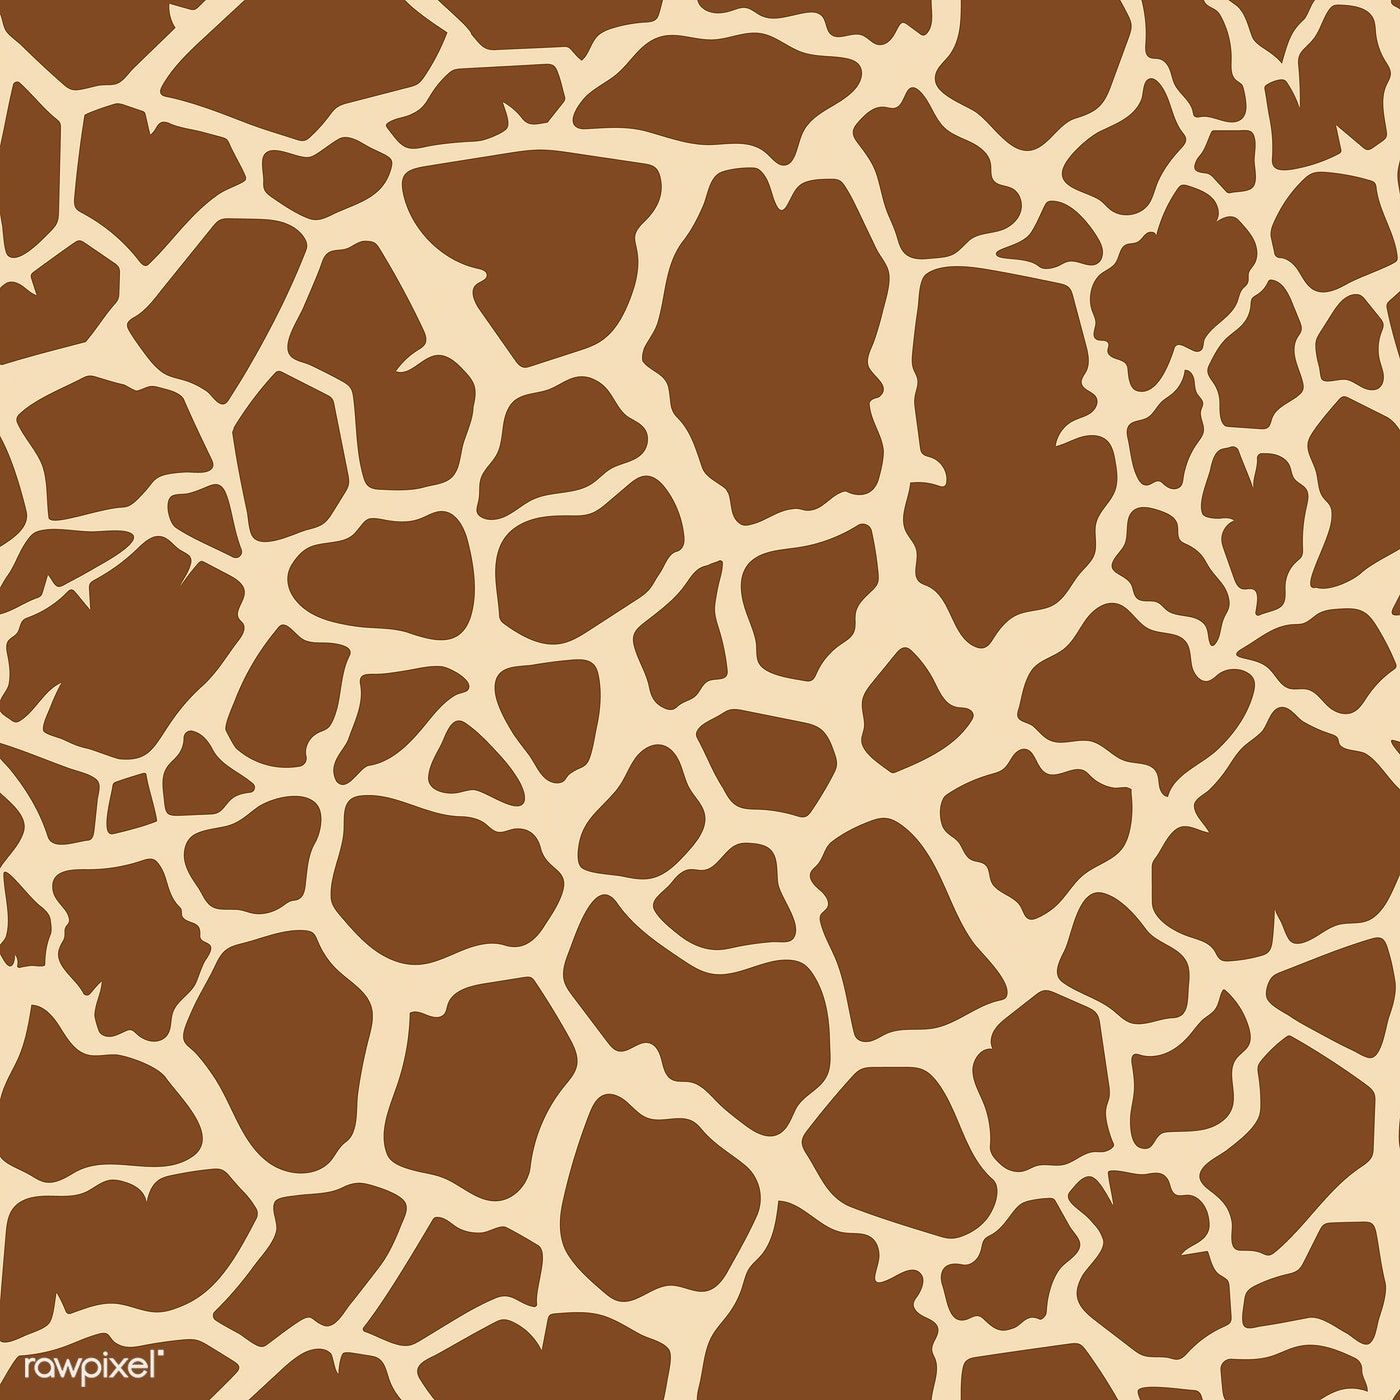 Seamless giraffe skin pattern vector. free image / manotang. Animal print background, Animal print wallpaper, Vector free